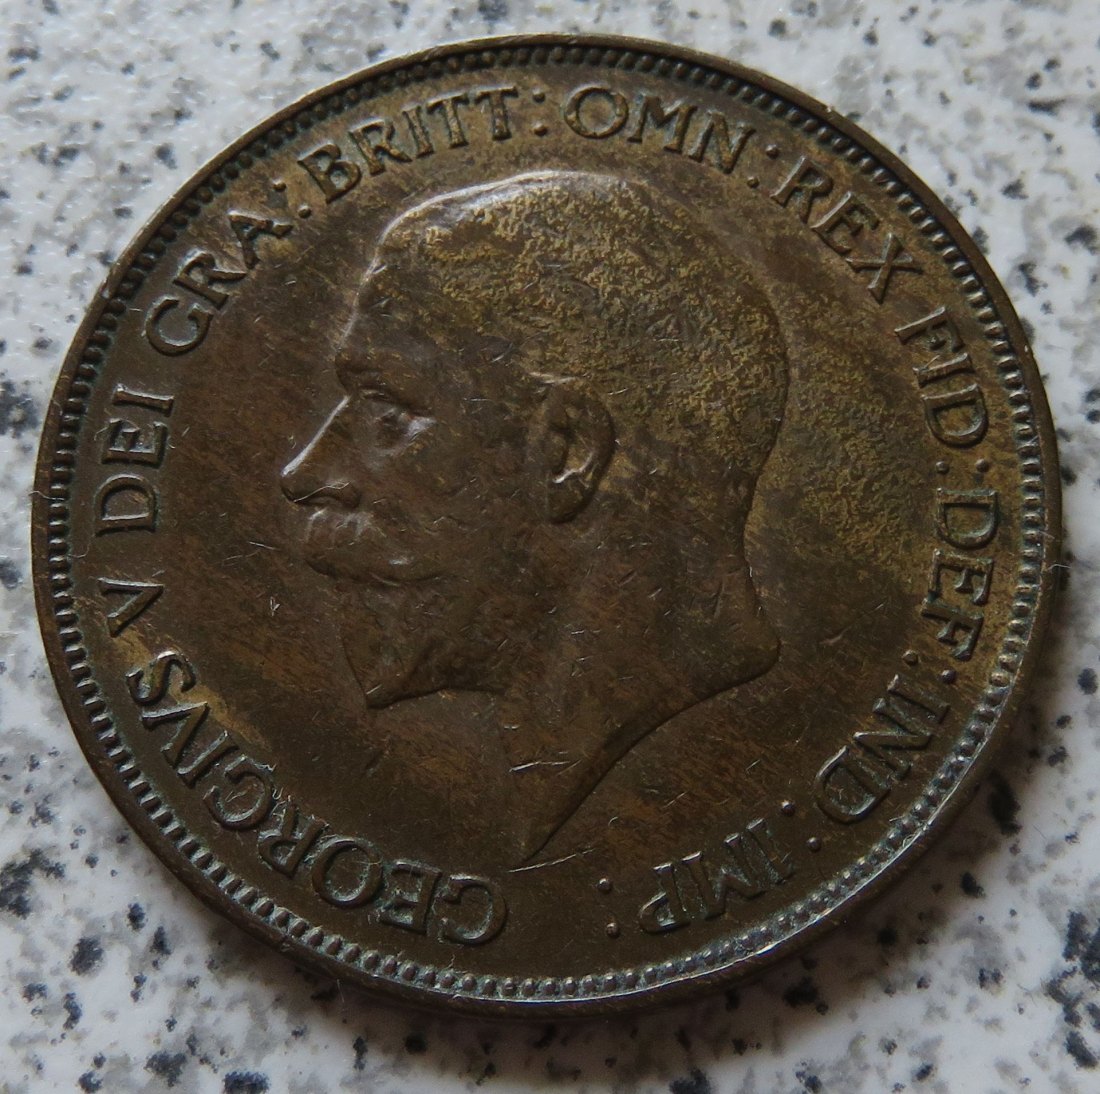  Großbritannien One Penny 1934, besser   